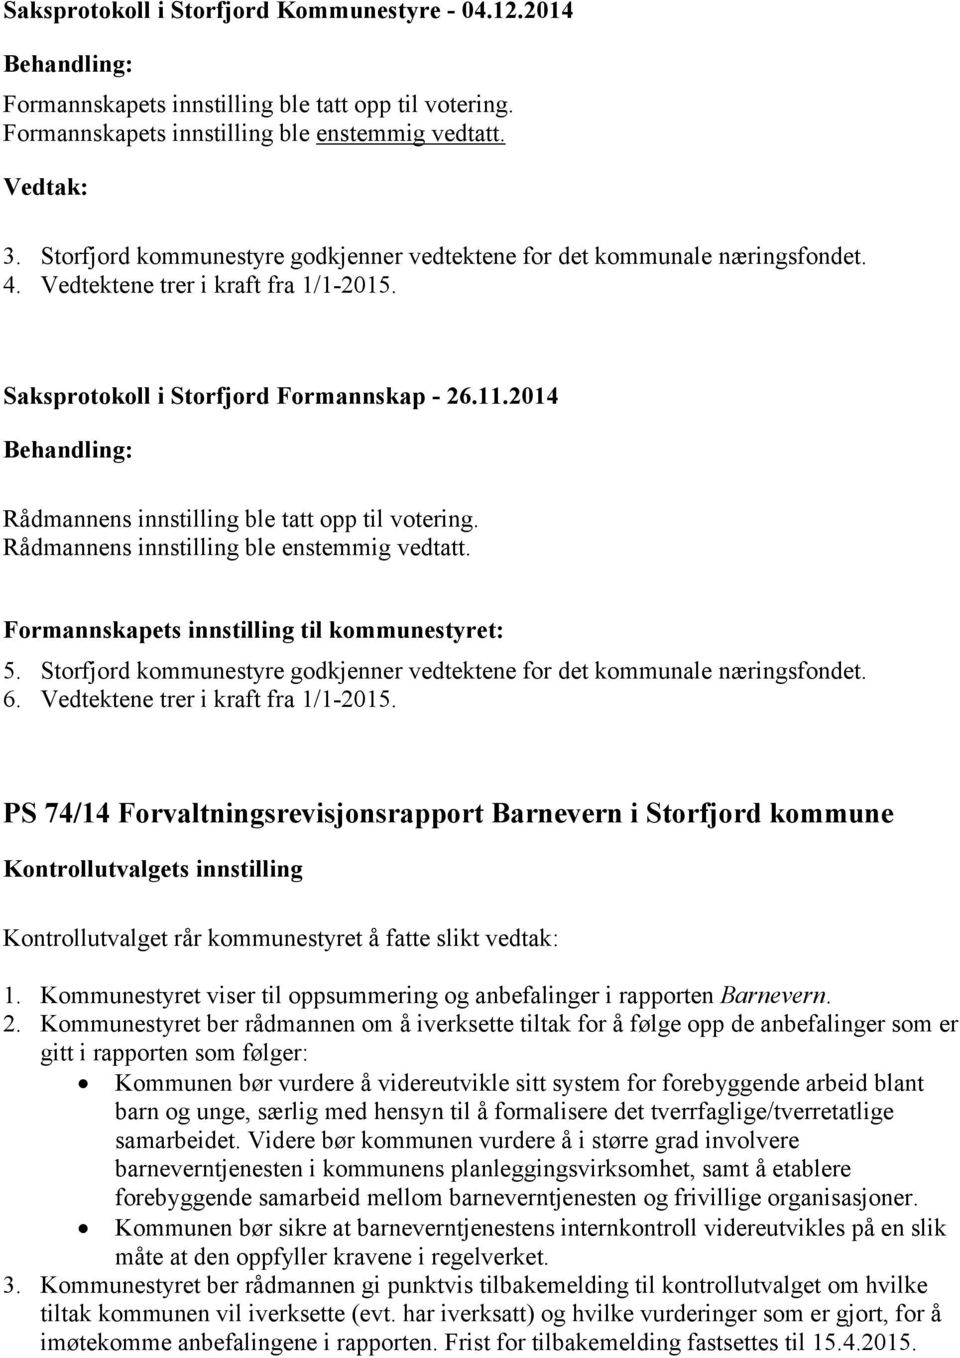 ble enstemmig vedtatt. Formannskapets innstilling til kommunestyret: 5. Storfjord kommunestyre godkjenner vedtektene for det kommunale næringsfondet. 6. Vedtektene trer i kraft fra 1/1-2015.